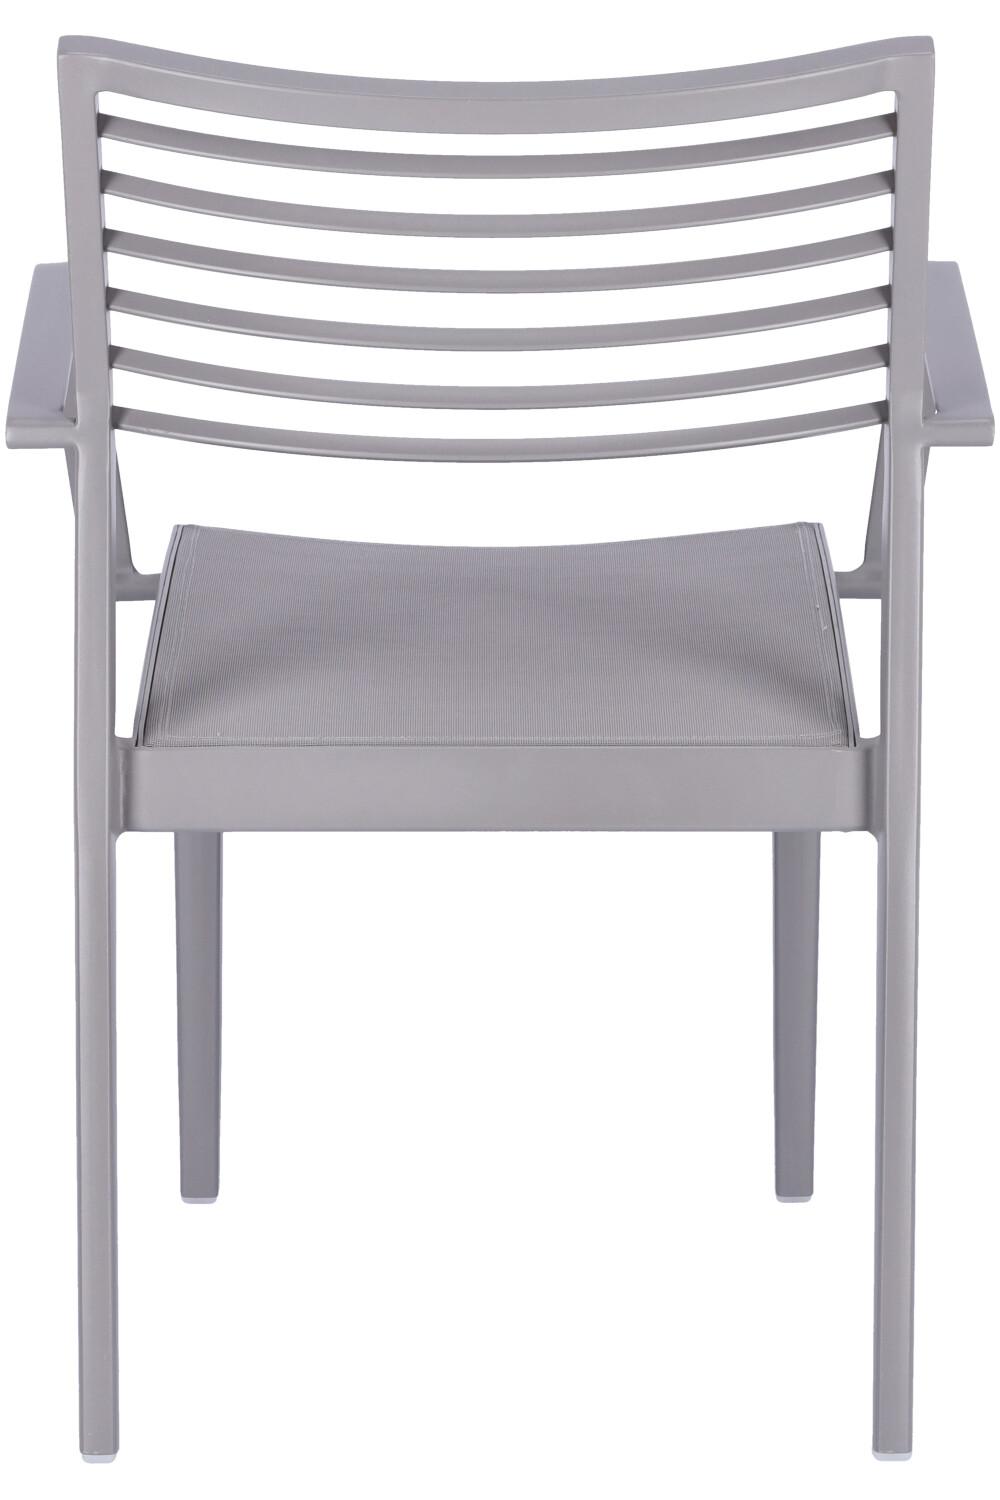 Abbildung arm chair Awon Rückansicht